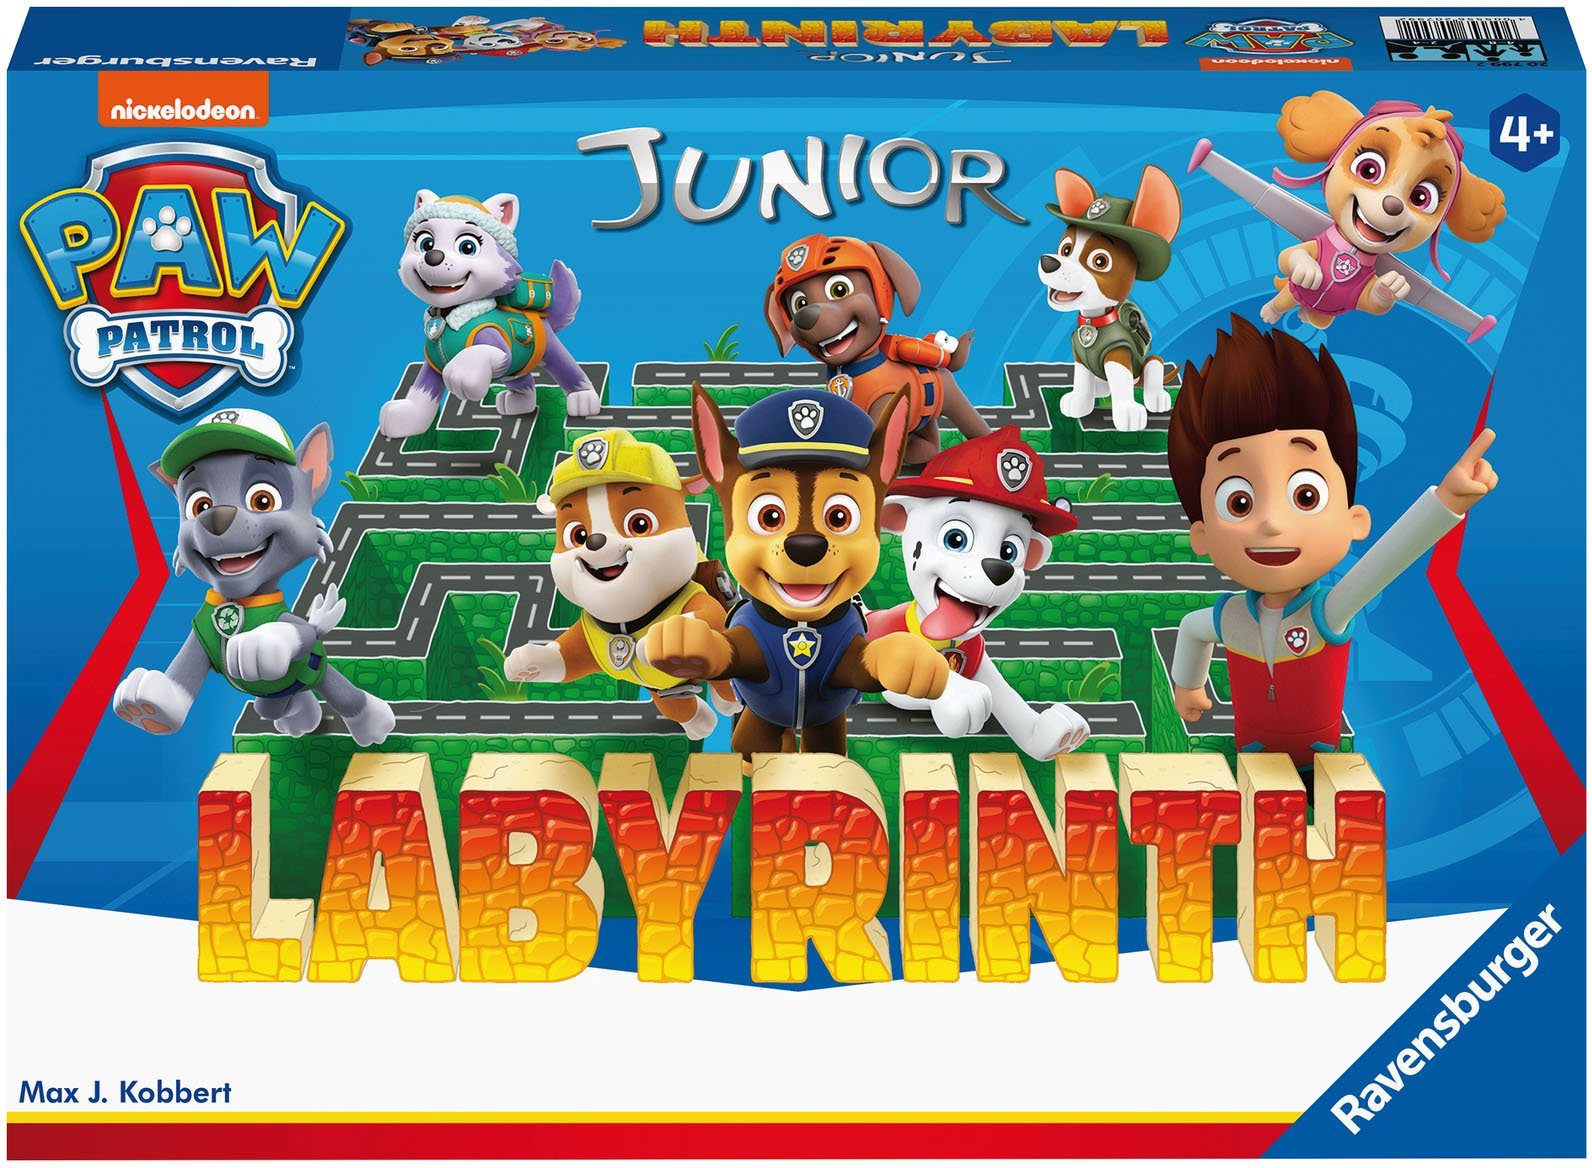 Junior Labyrinth, Wald - Patrol Made Paw in Strategiespiel Ravensburger - Europe weltweit; Spiel, schützt FSC®